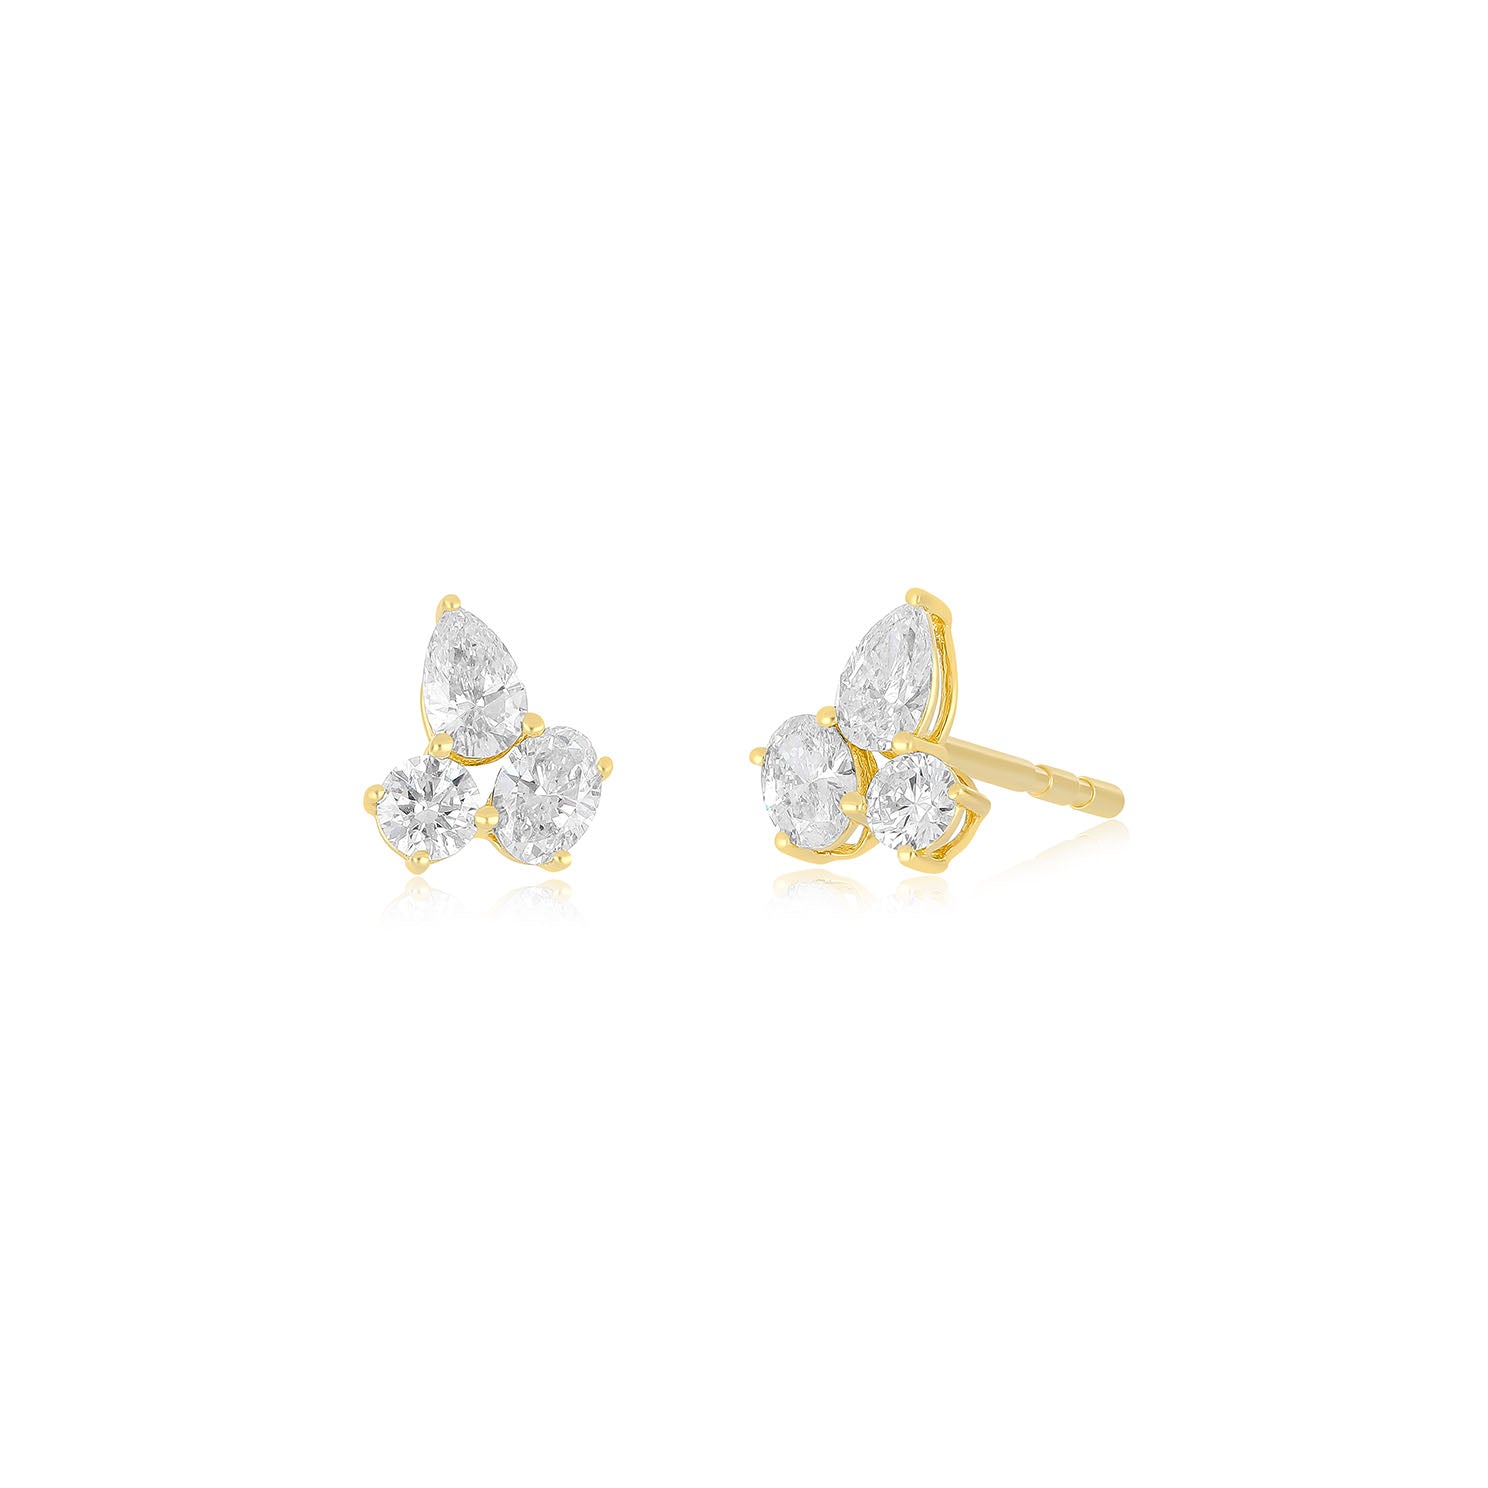 Triple Diamond Cluster Stud Earrings in 14k yellow gold